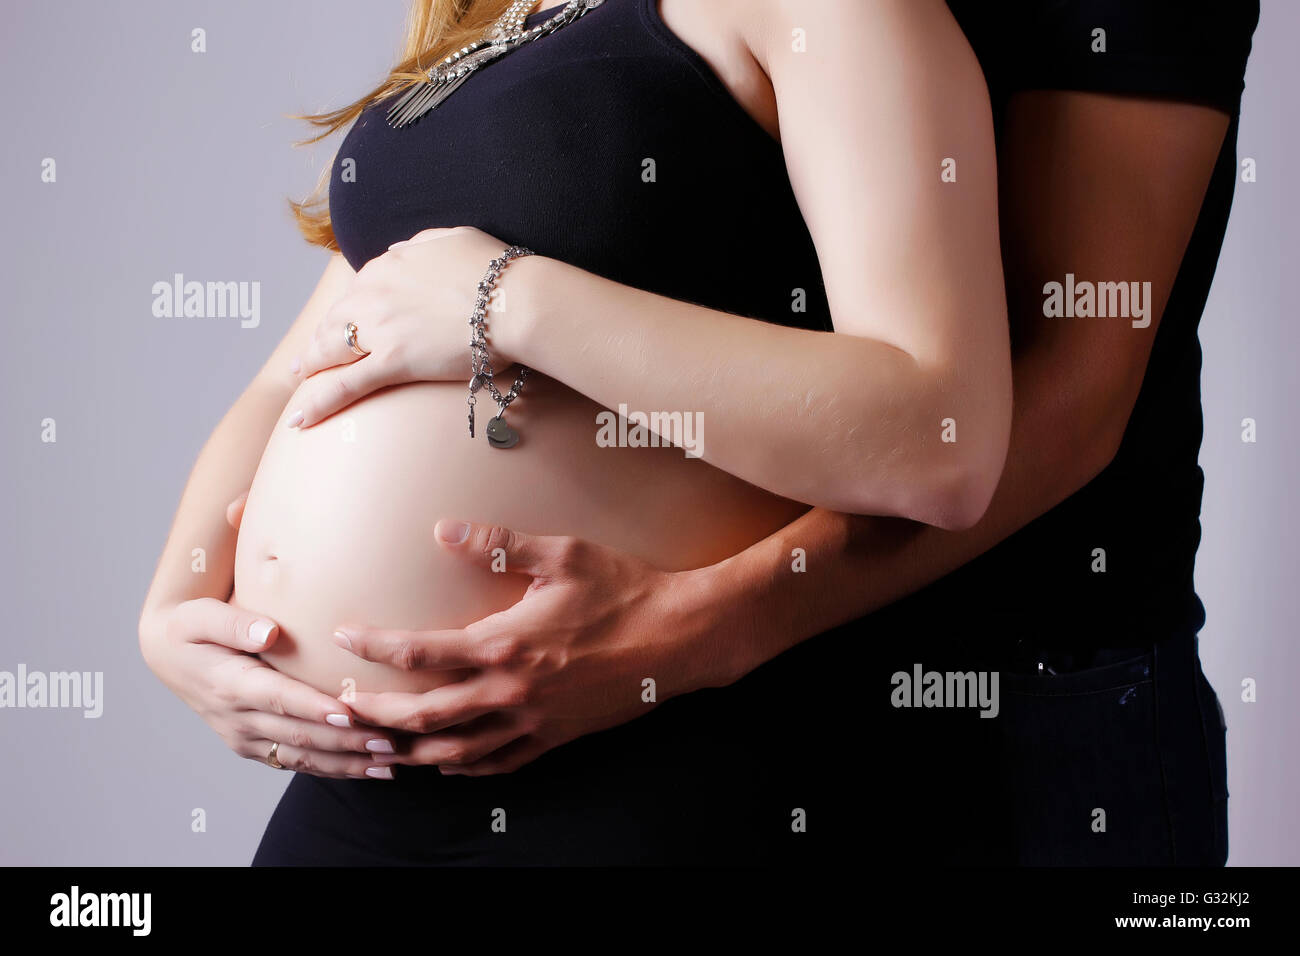 Libre de femme enceinte et son mari de toucher son ventre. Attendez la  famille nouvel enfant Photo Stock - Alamy